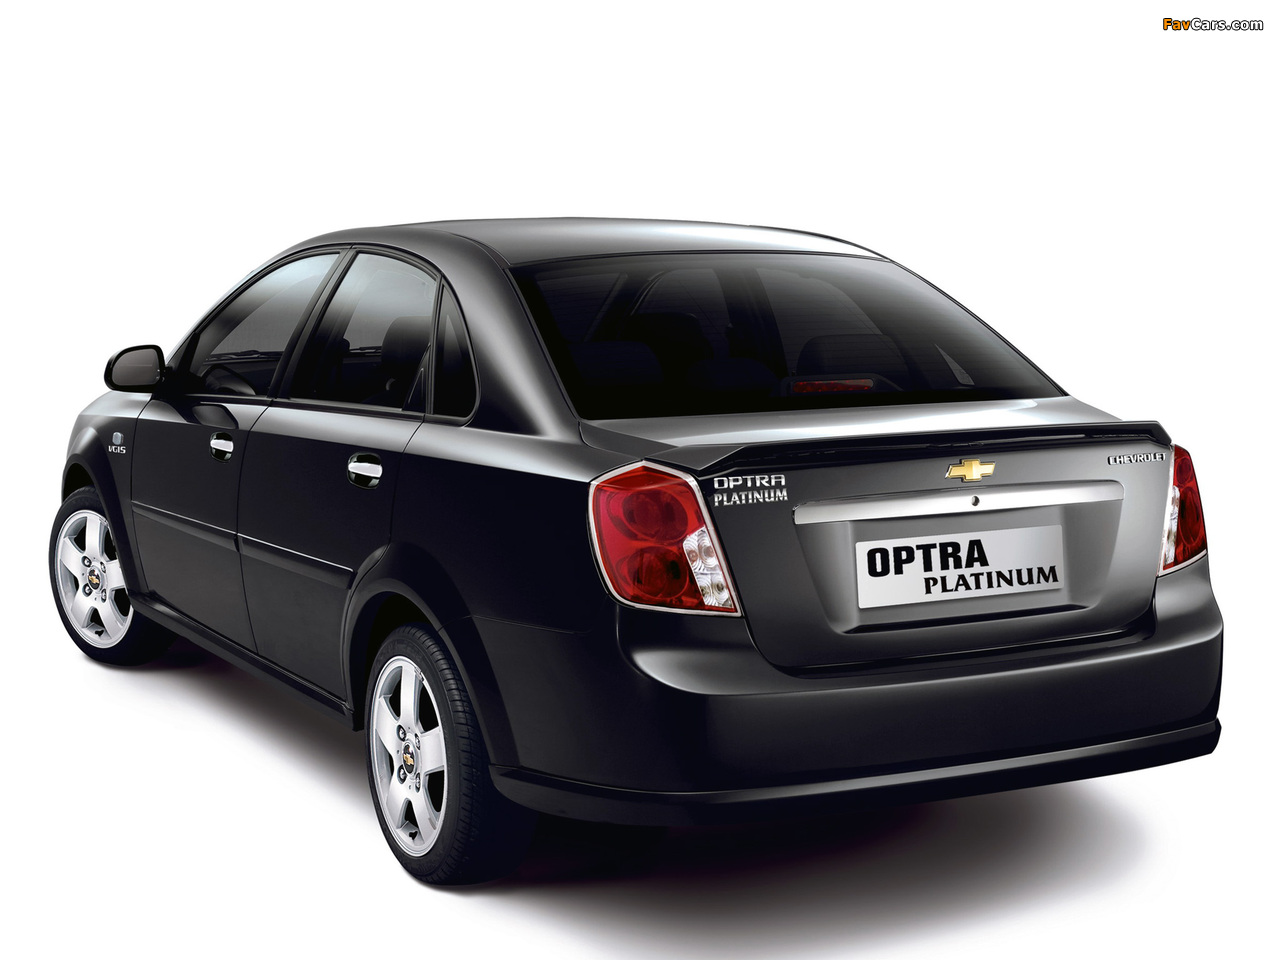 Chevrolet Optra Platinum 2007 images (1280 x 960)